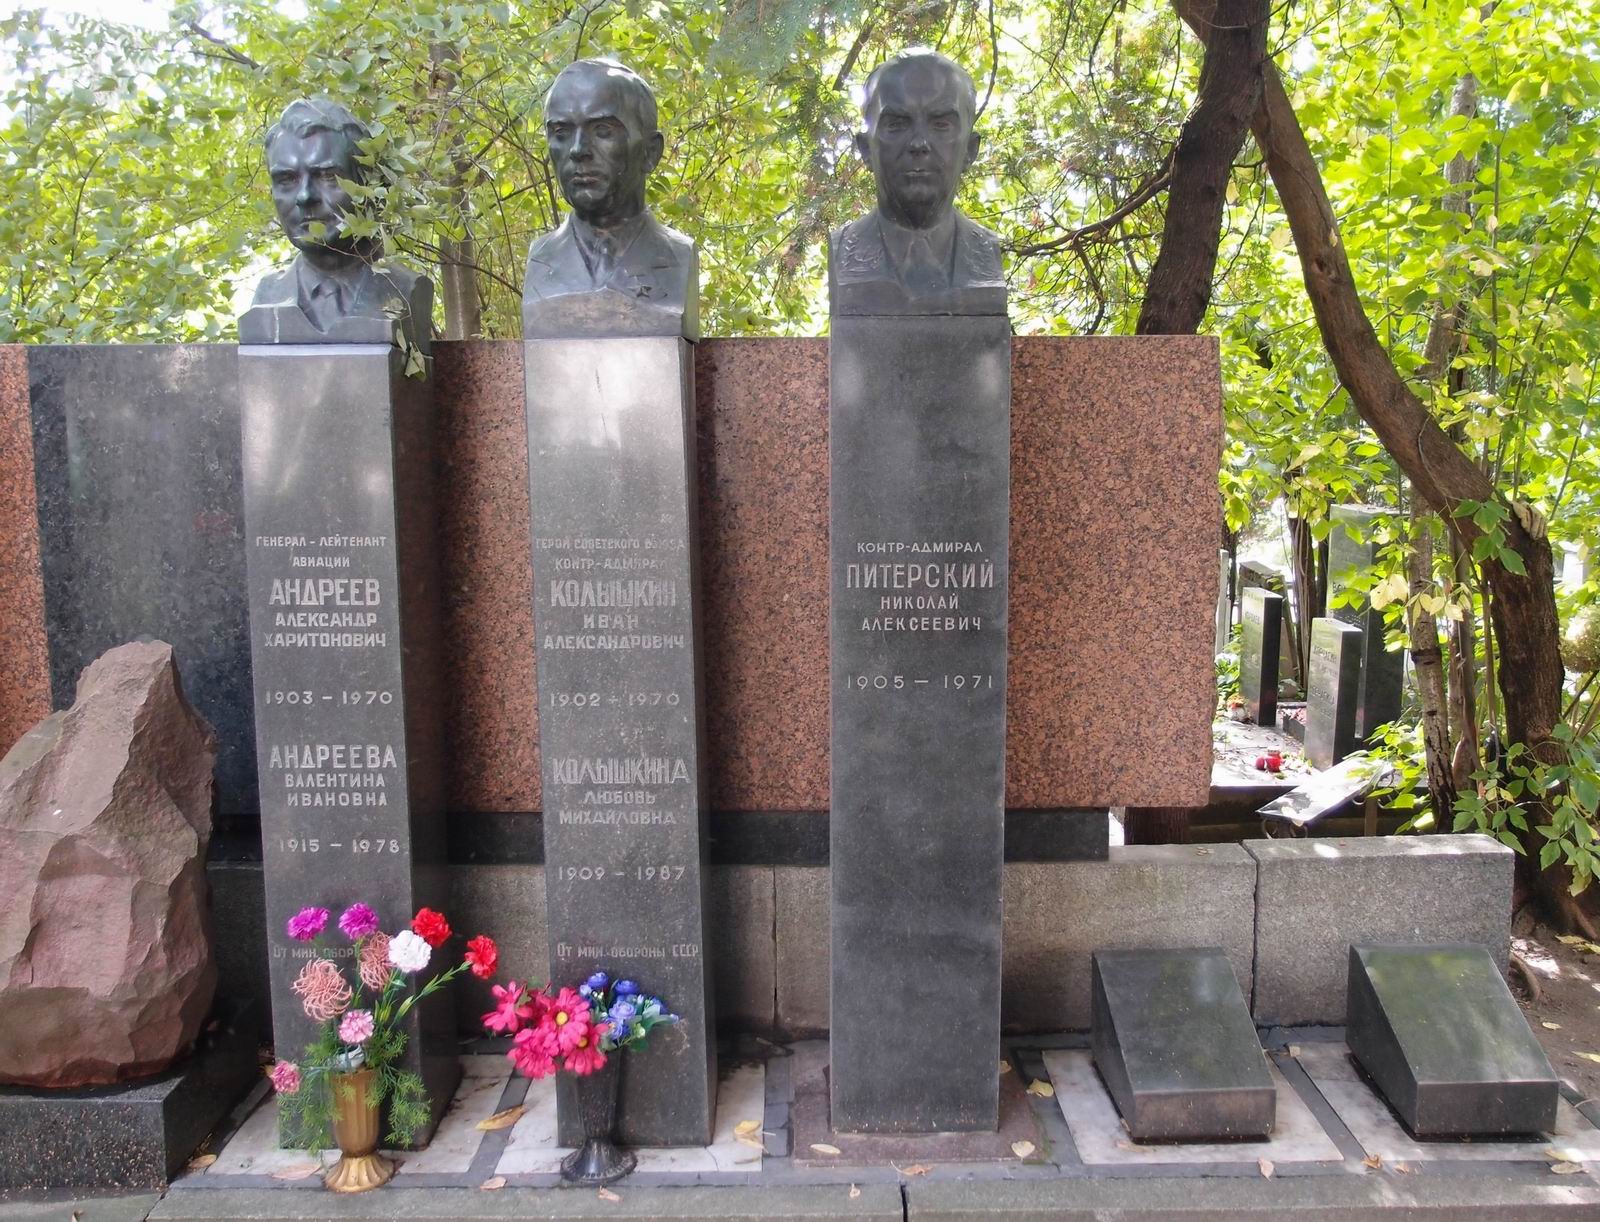 Памятник на могиле Питерского Н.А. (1905–1971), ск. А.Елецкий, арх. П.Ботвинников, на Новодевичьем кладбище (1–43–4). Нажмите левую кнопку мыши чтобы увидеть комплекс полностью.